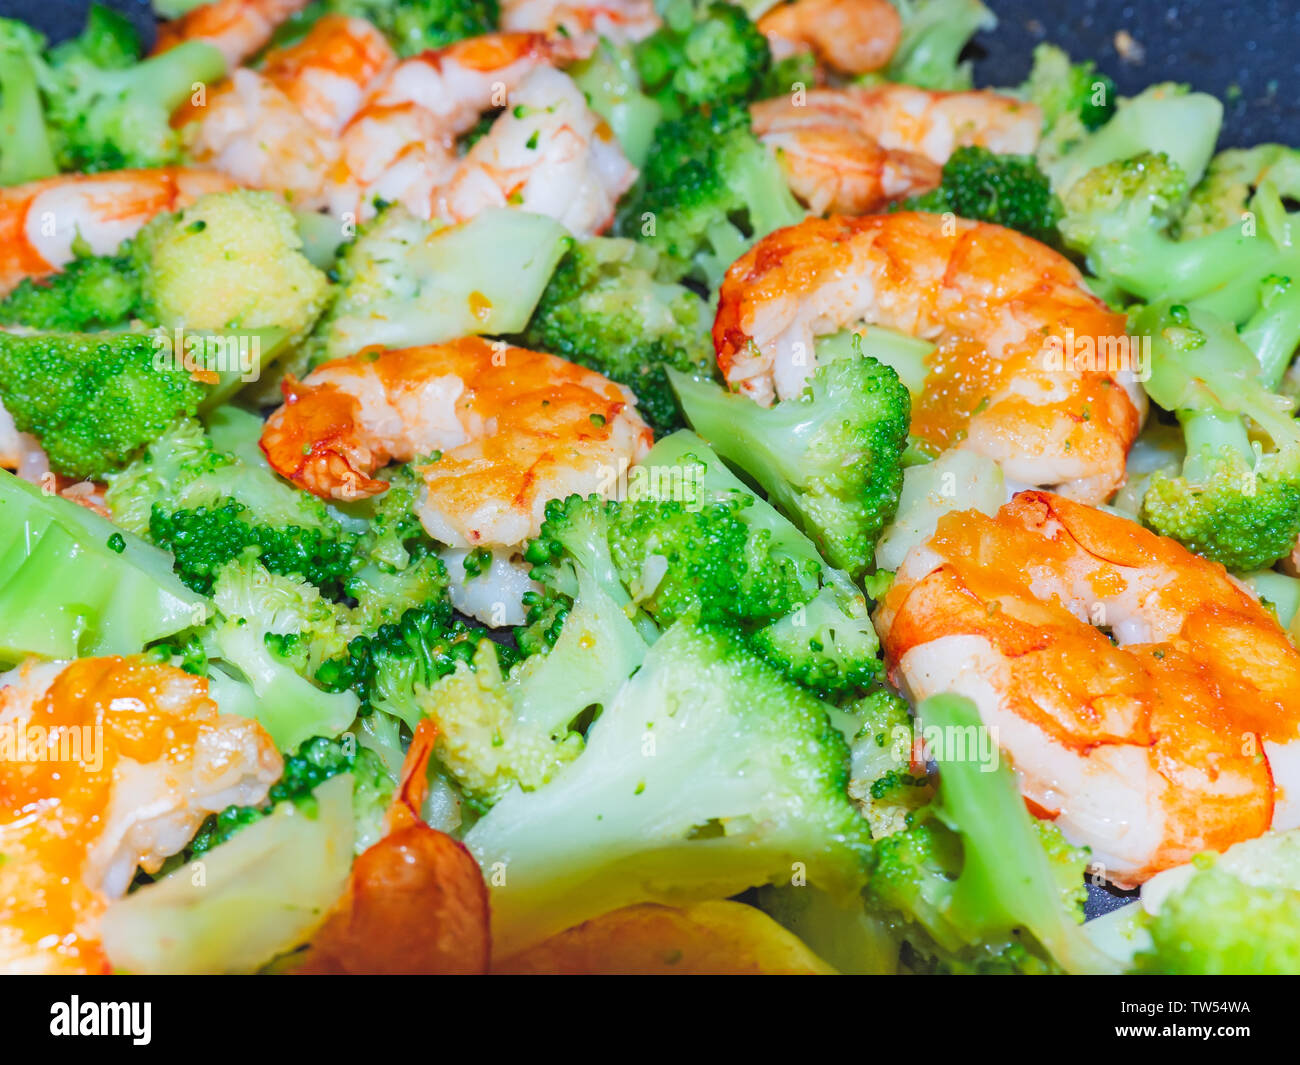 Nahaufnahme des thailändischen, chinesischen traditionellen gesundes Essen rühren - gebratener Broccoli mit Krabben oder Garnelen. Stockfoto